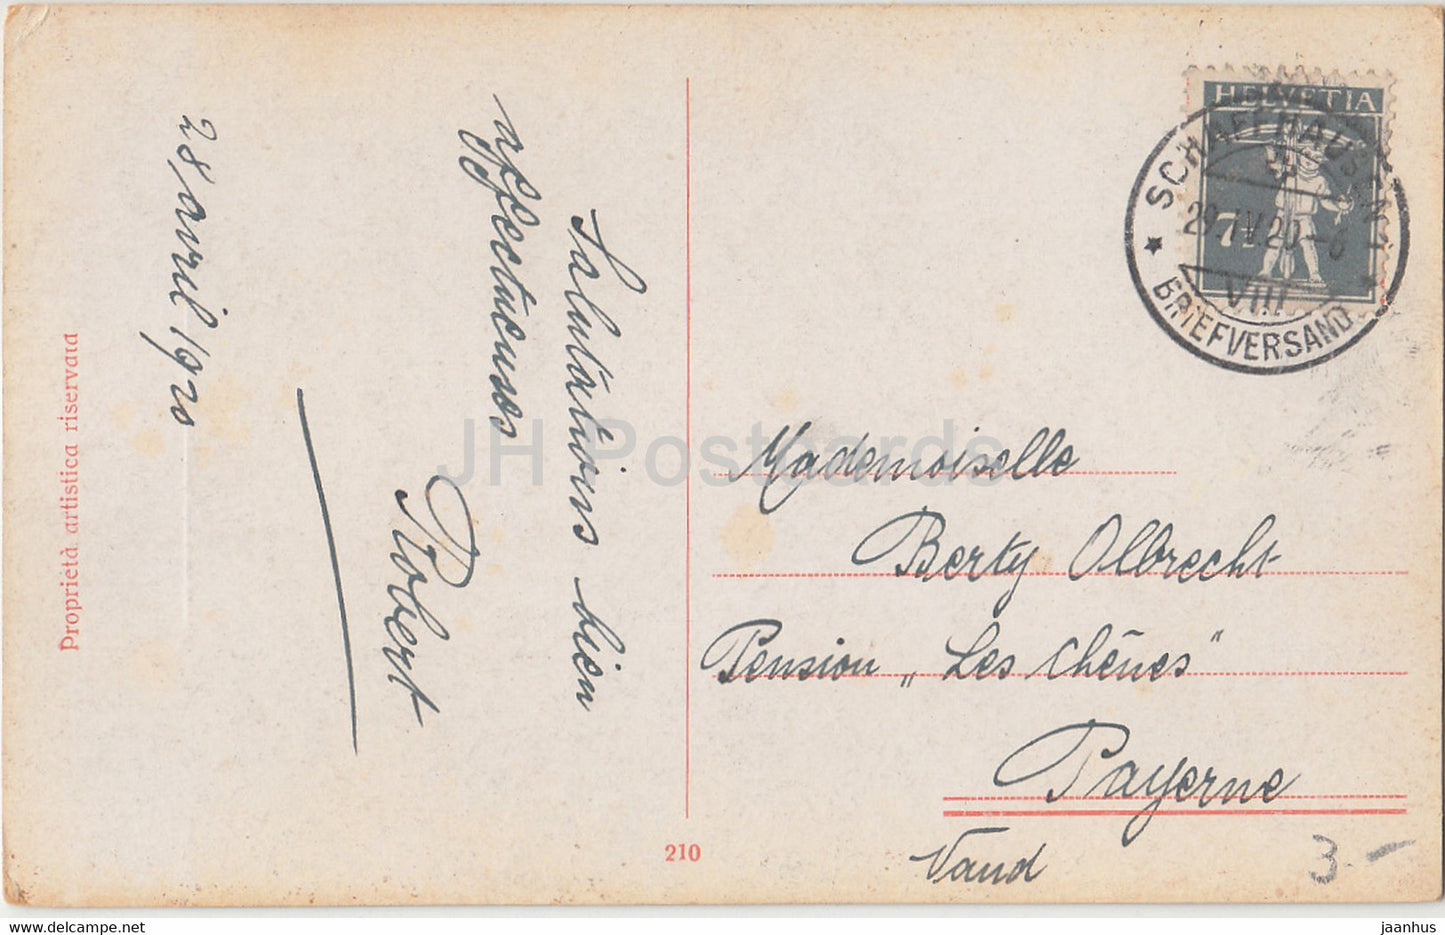 Junge Frau schreibt einen Brief - Illustration von A. Simeone - 210 - alte Postkarte - 1920 - Italien - gebraucht